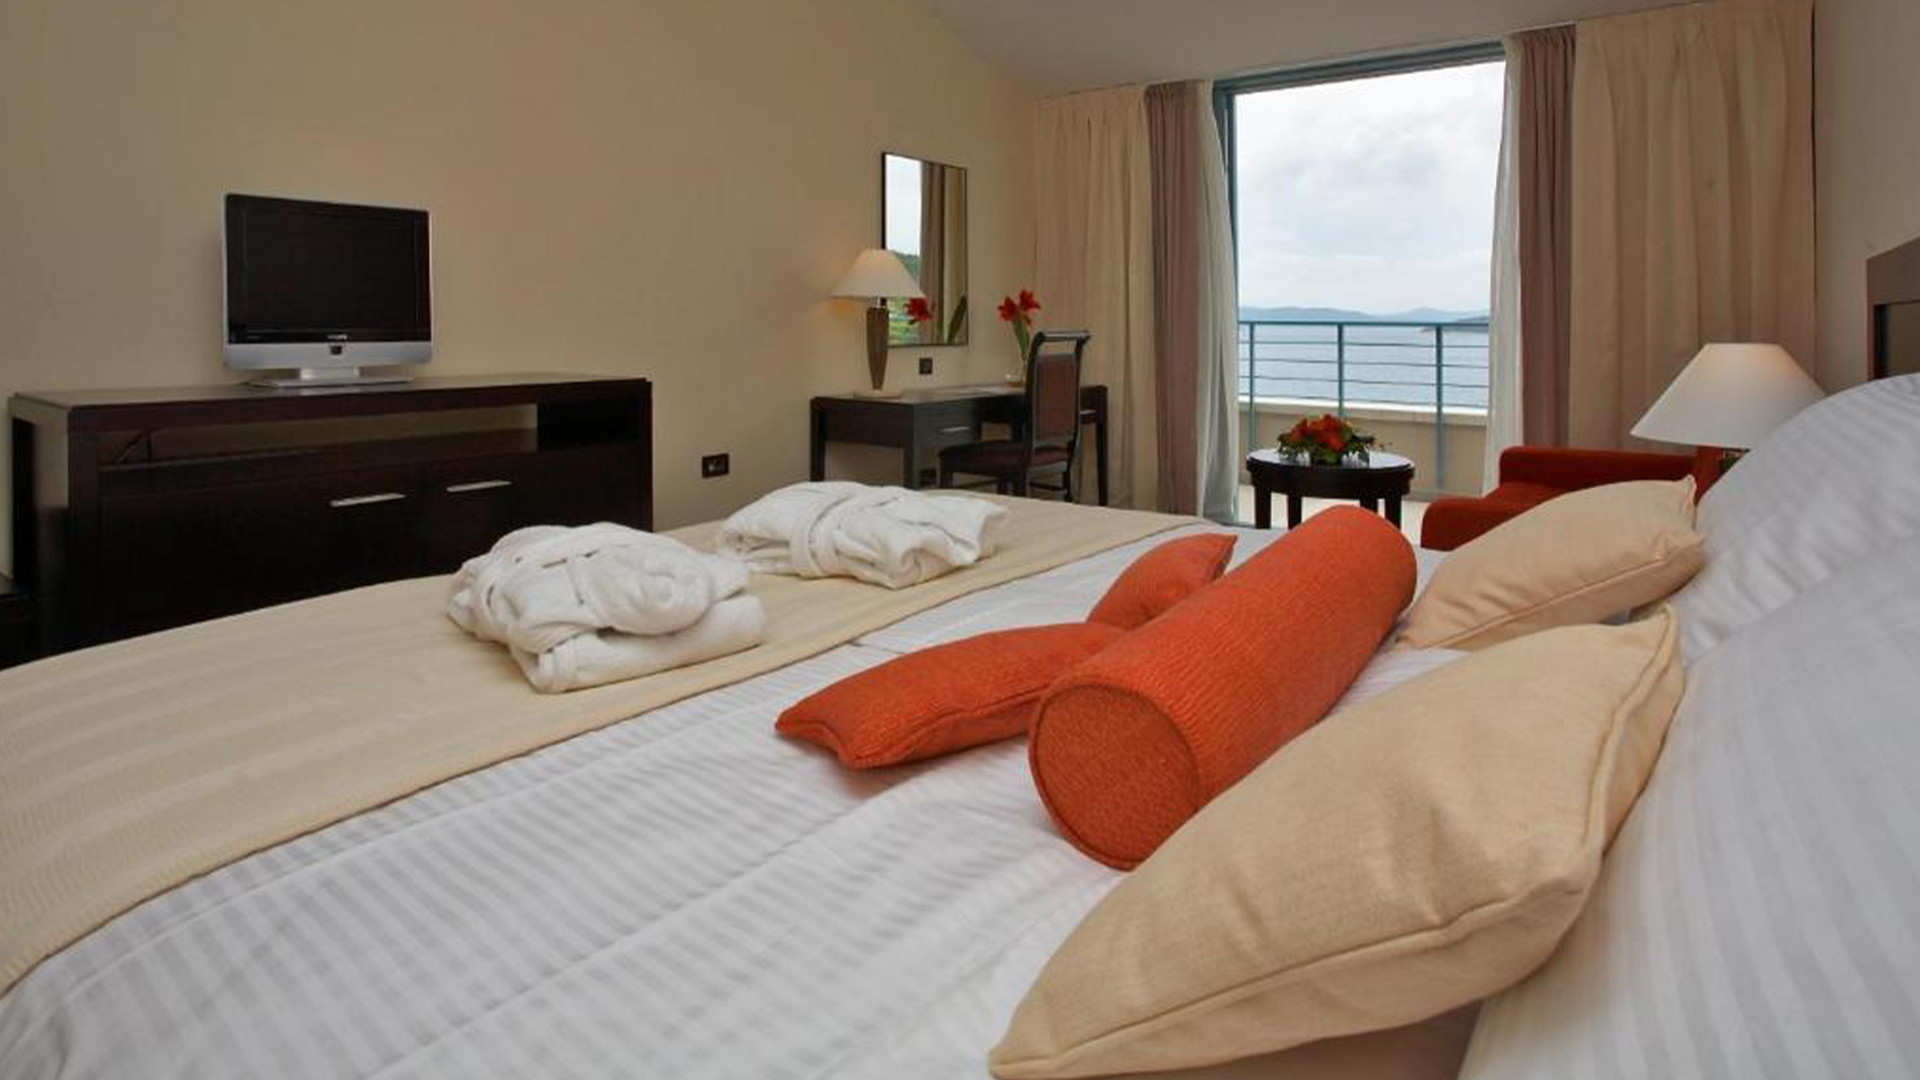 Luksuzan odmor s 5***** u Admiral Grand Hotelu s pogledom na more